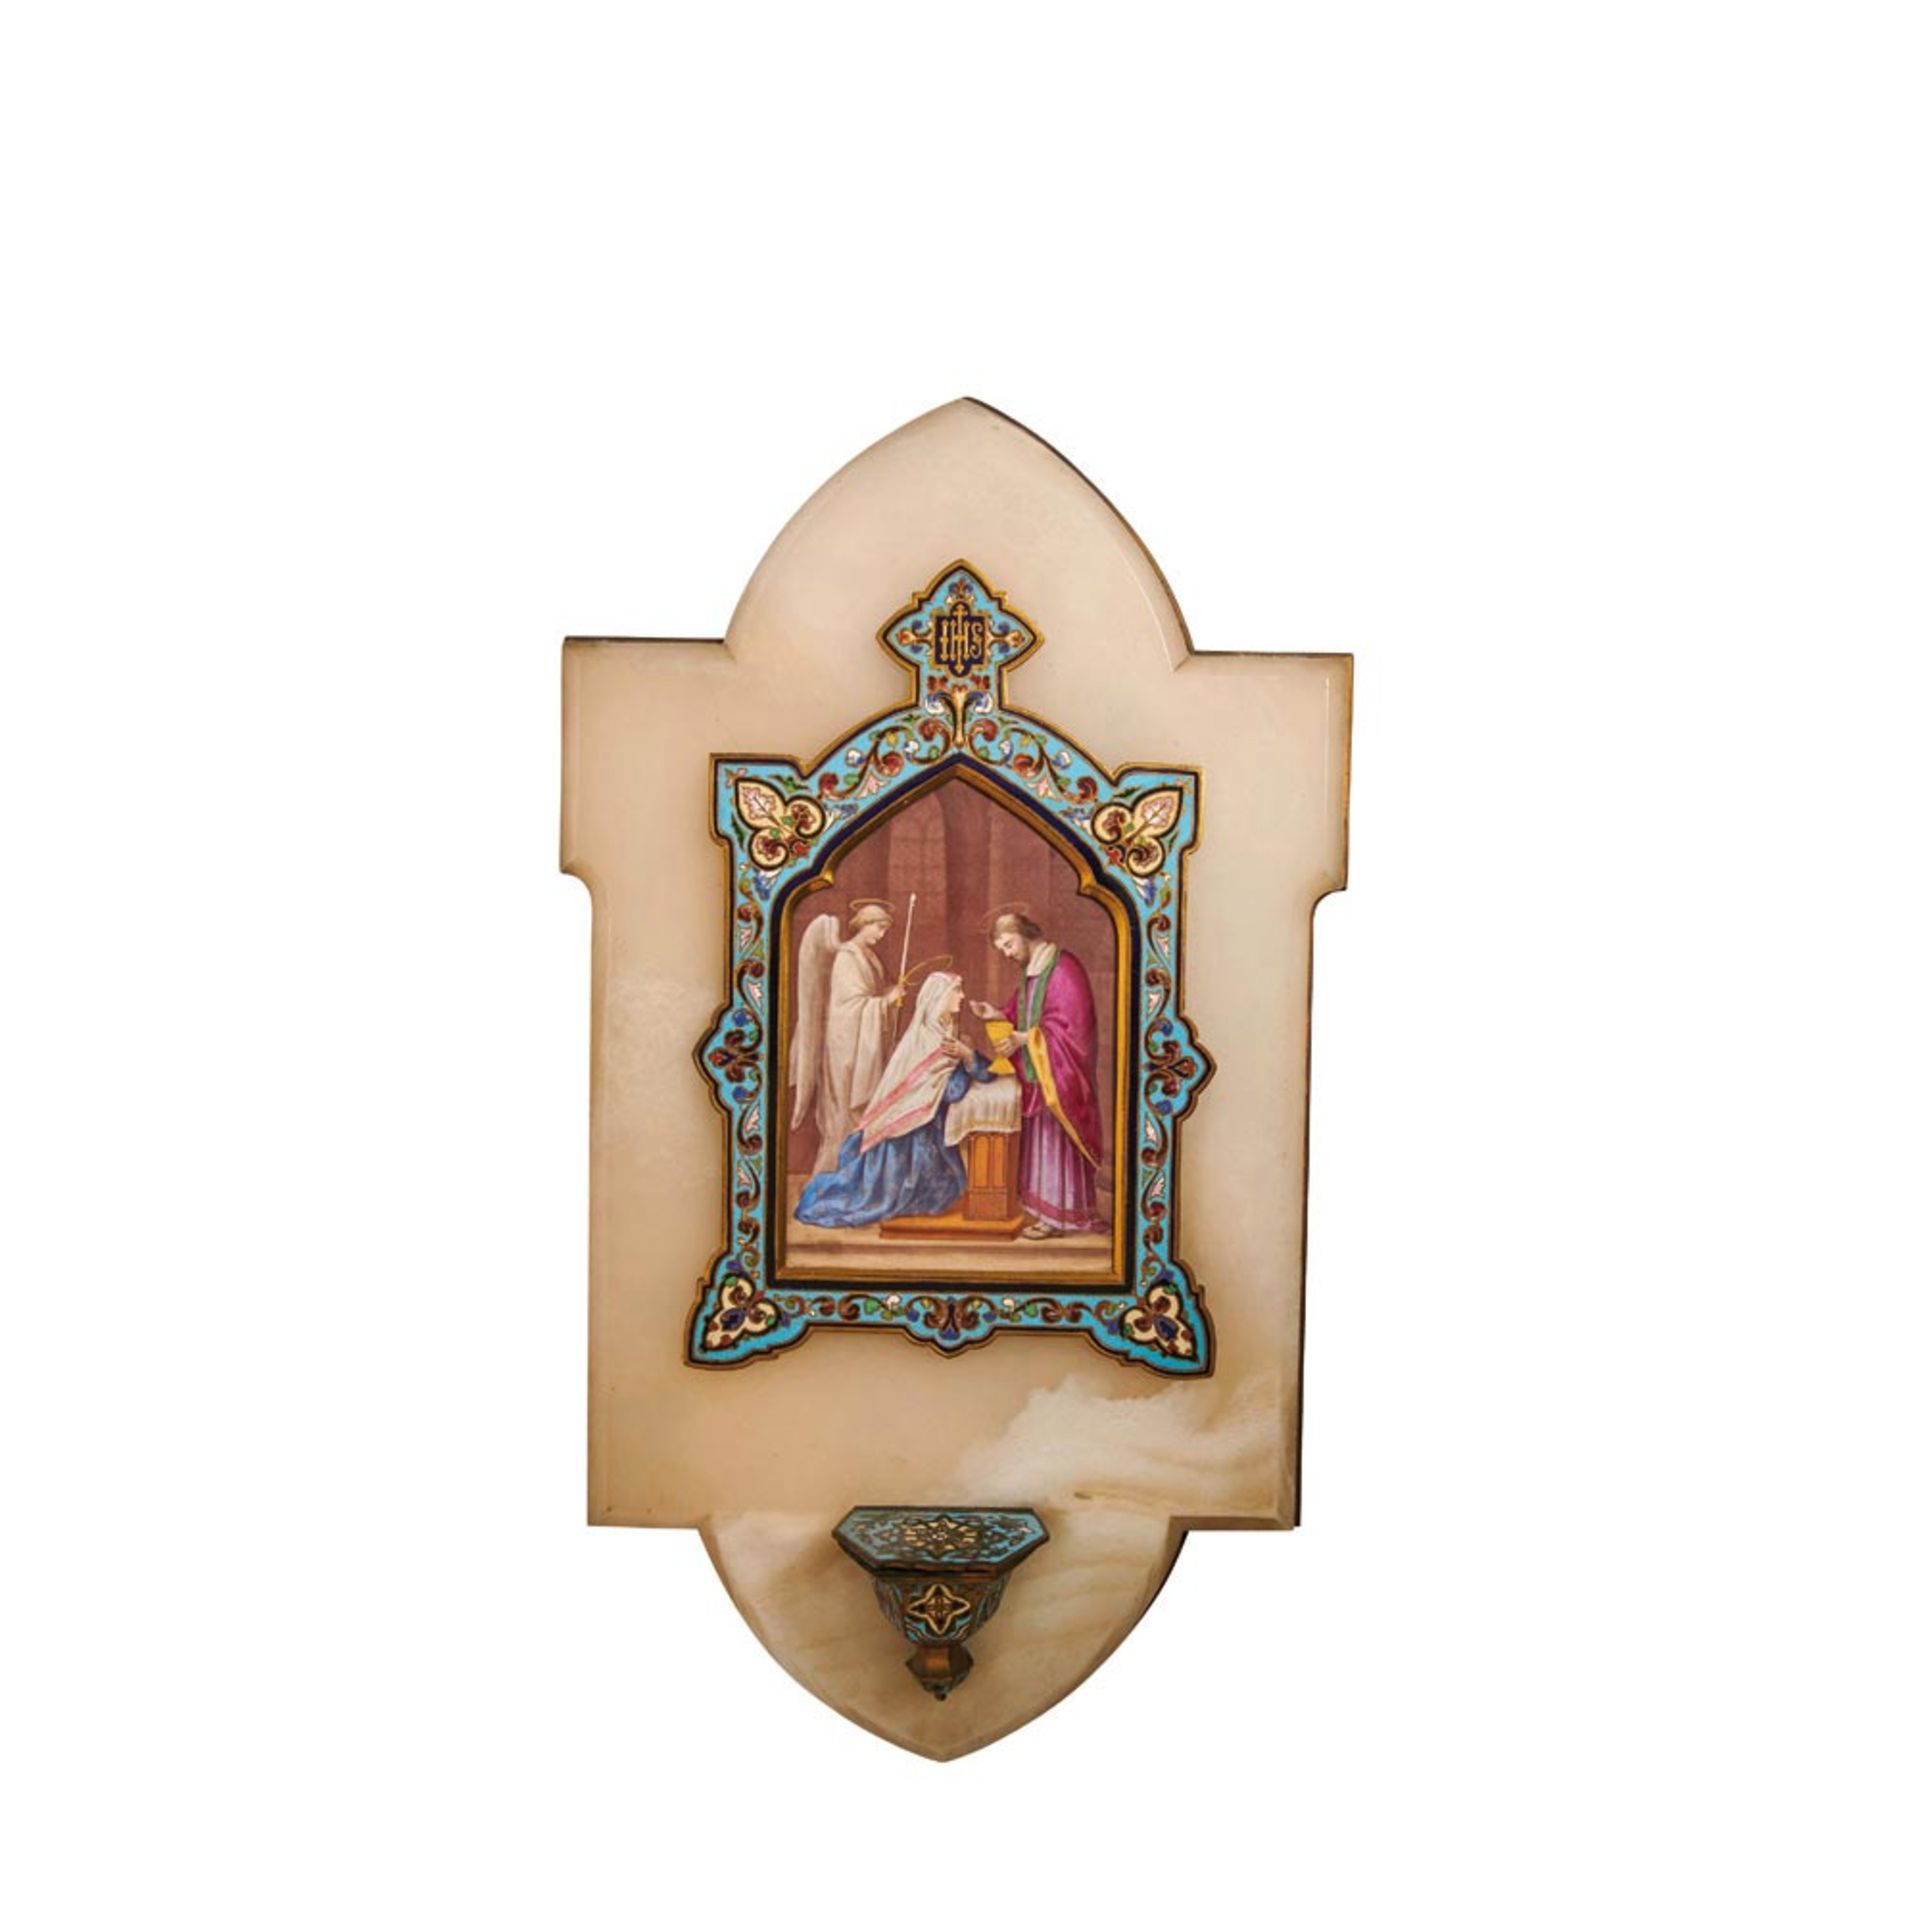 Benditera en ónix, bronce y esmalte cloisonné con representación de La comunión de la Virgen en